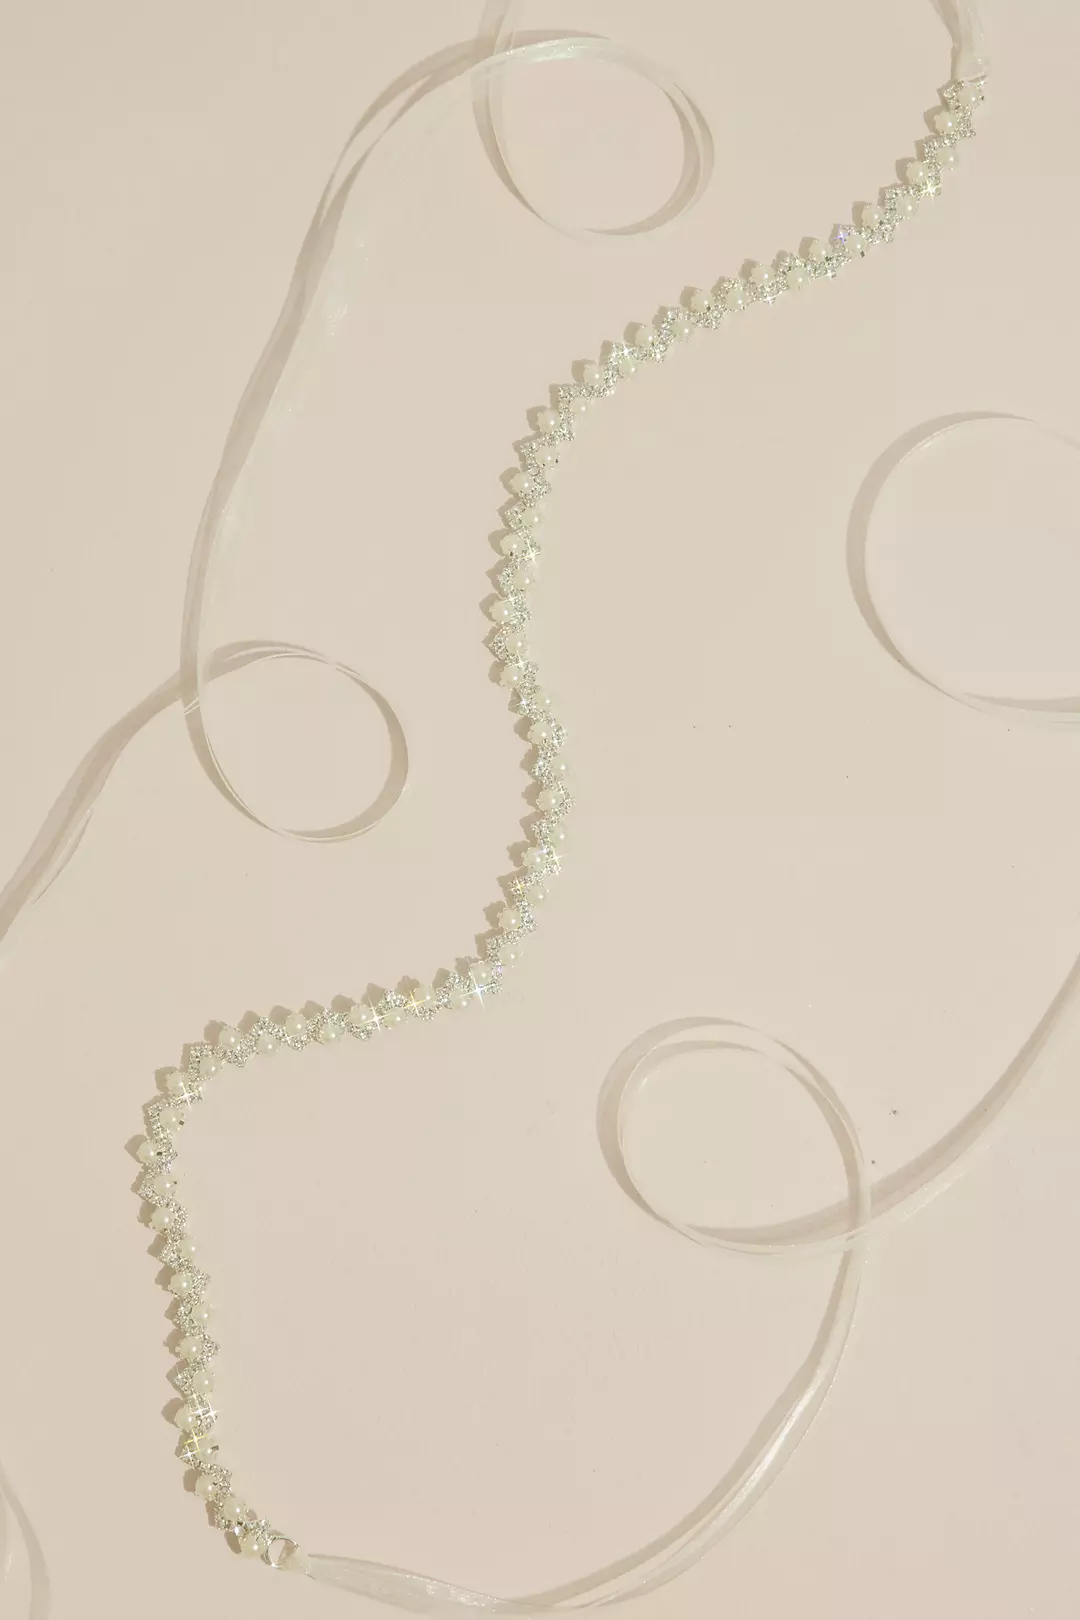 Thin Crystal Sash with Organza Ribbon Image